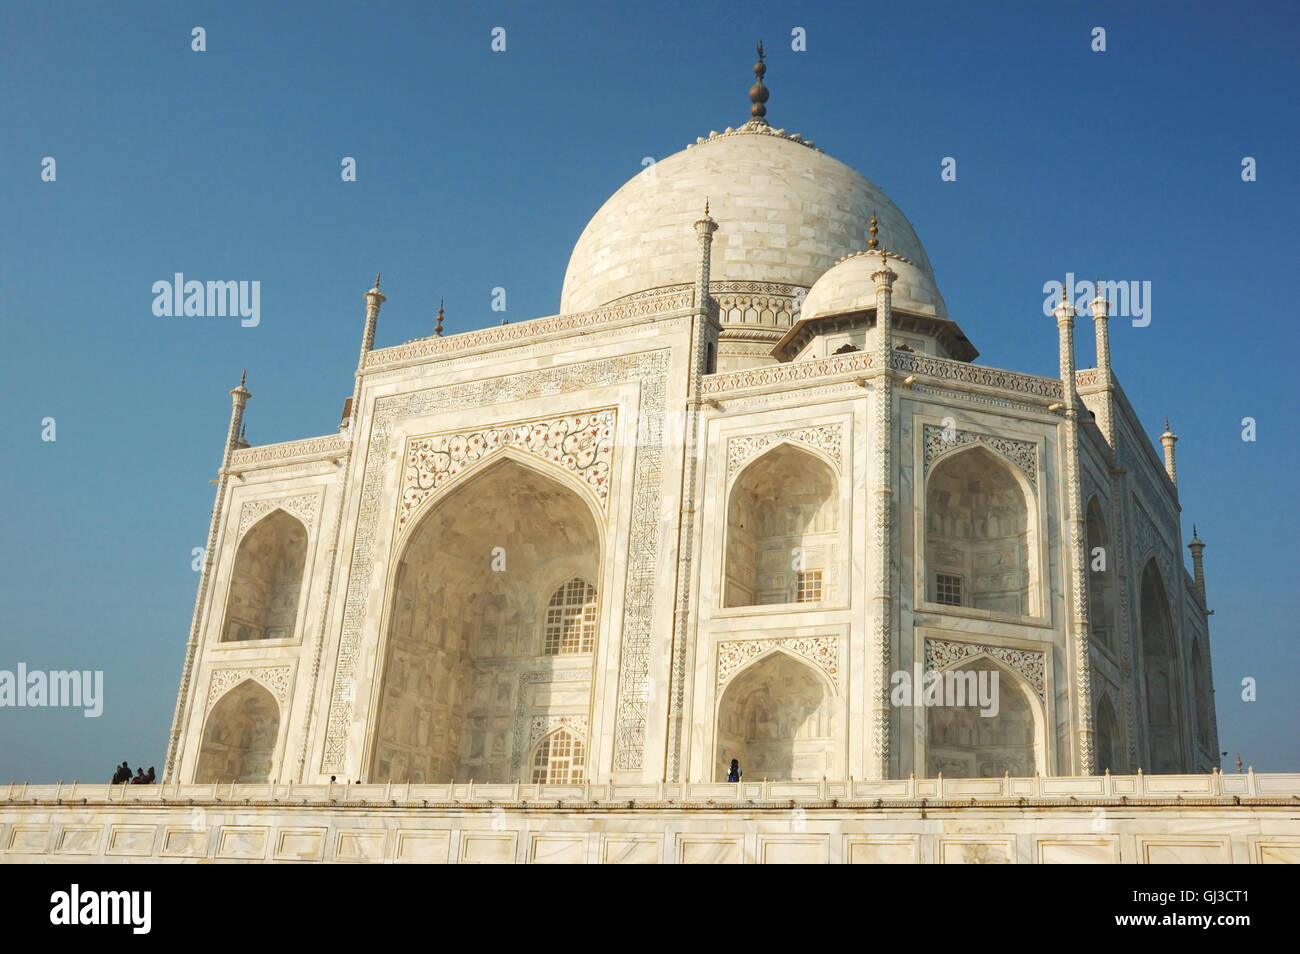 Taj Mahal in Agra  - famous landmark in Uttar Pradesh, India Stock Photo